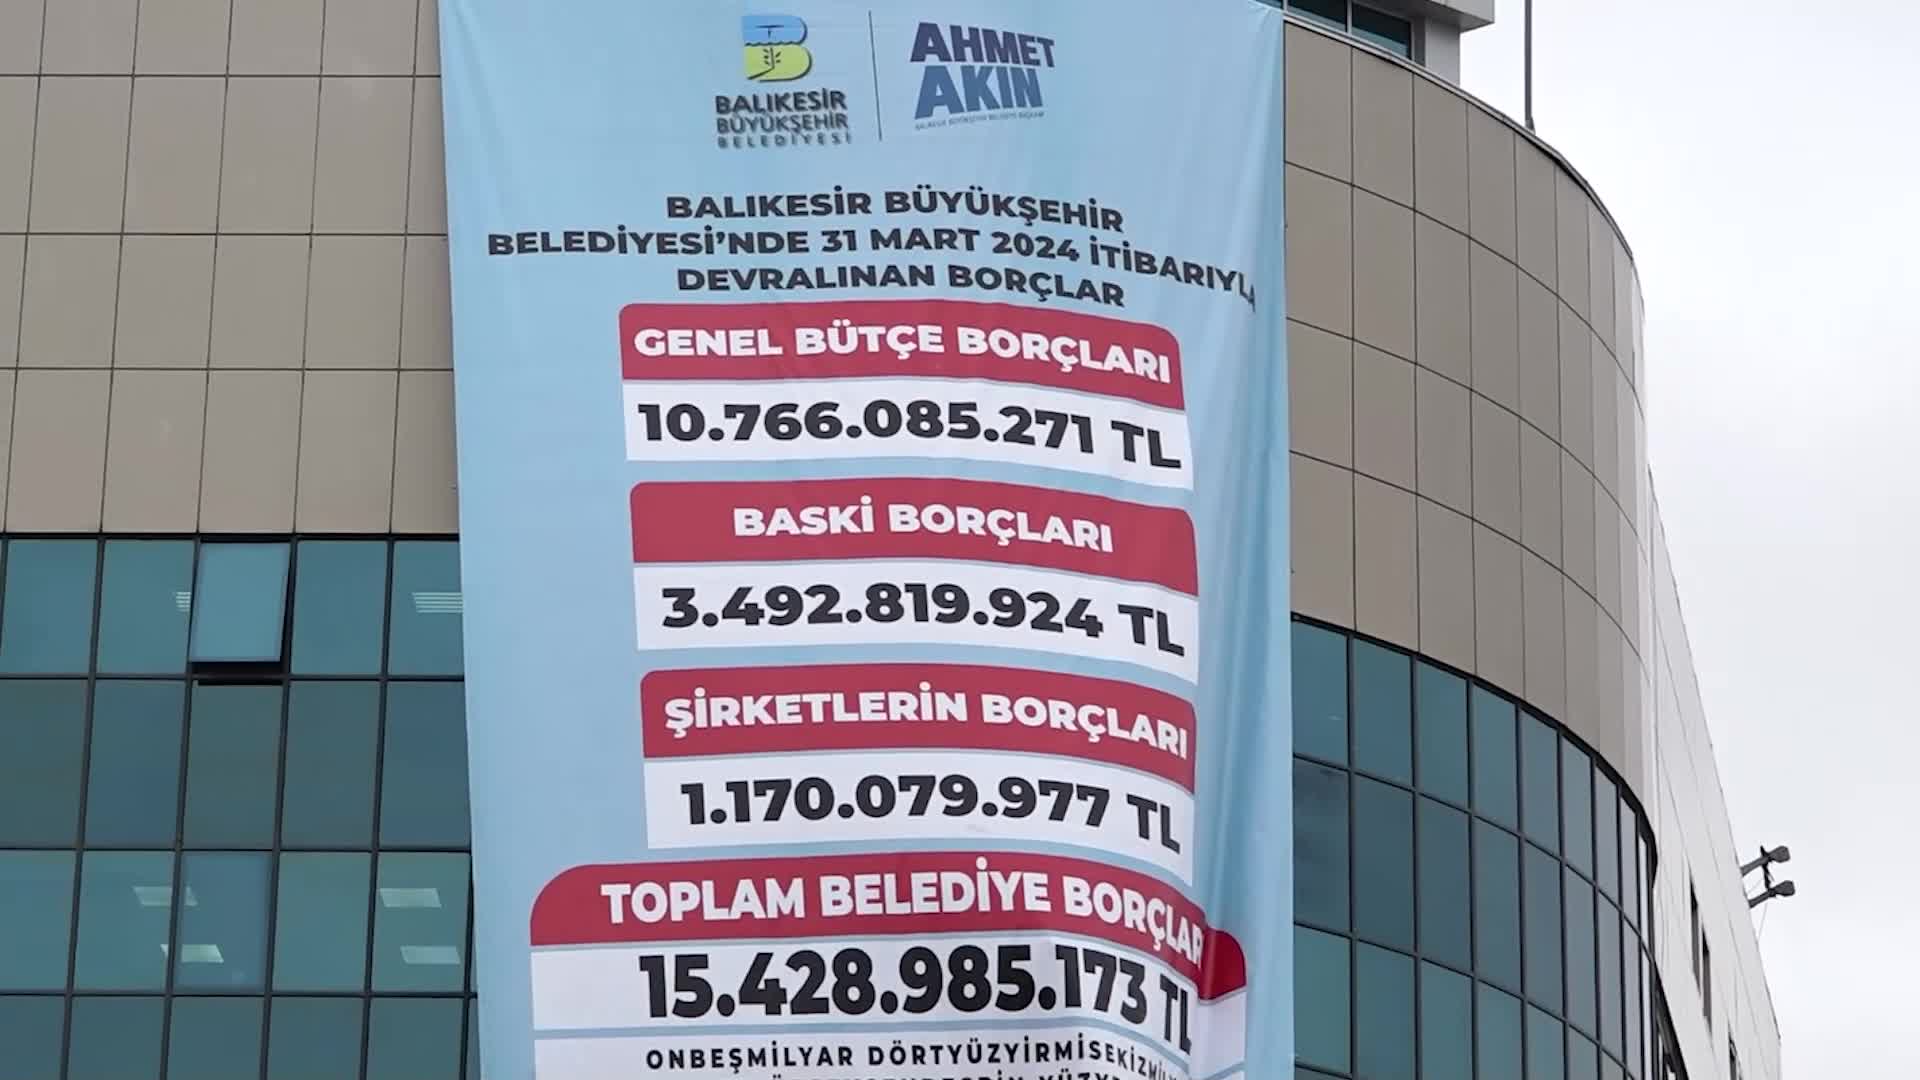 Balıkesir Belediyesi'nin 15 milyar 428 milyon 985 bin liralık borcu binaya asıldı